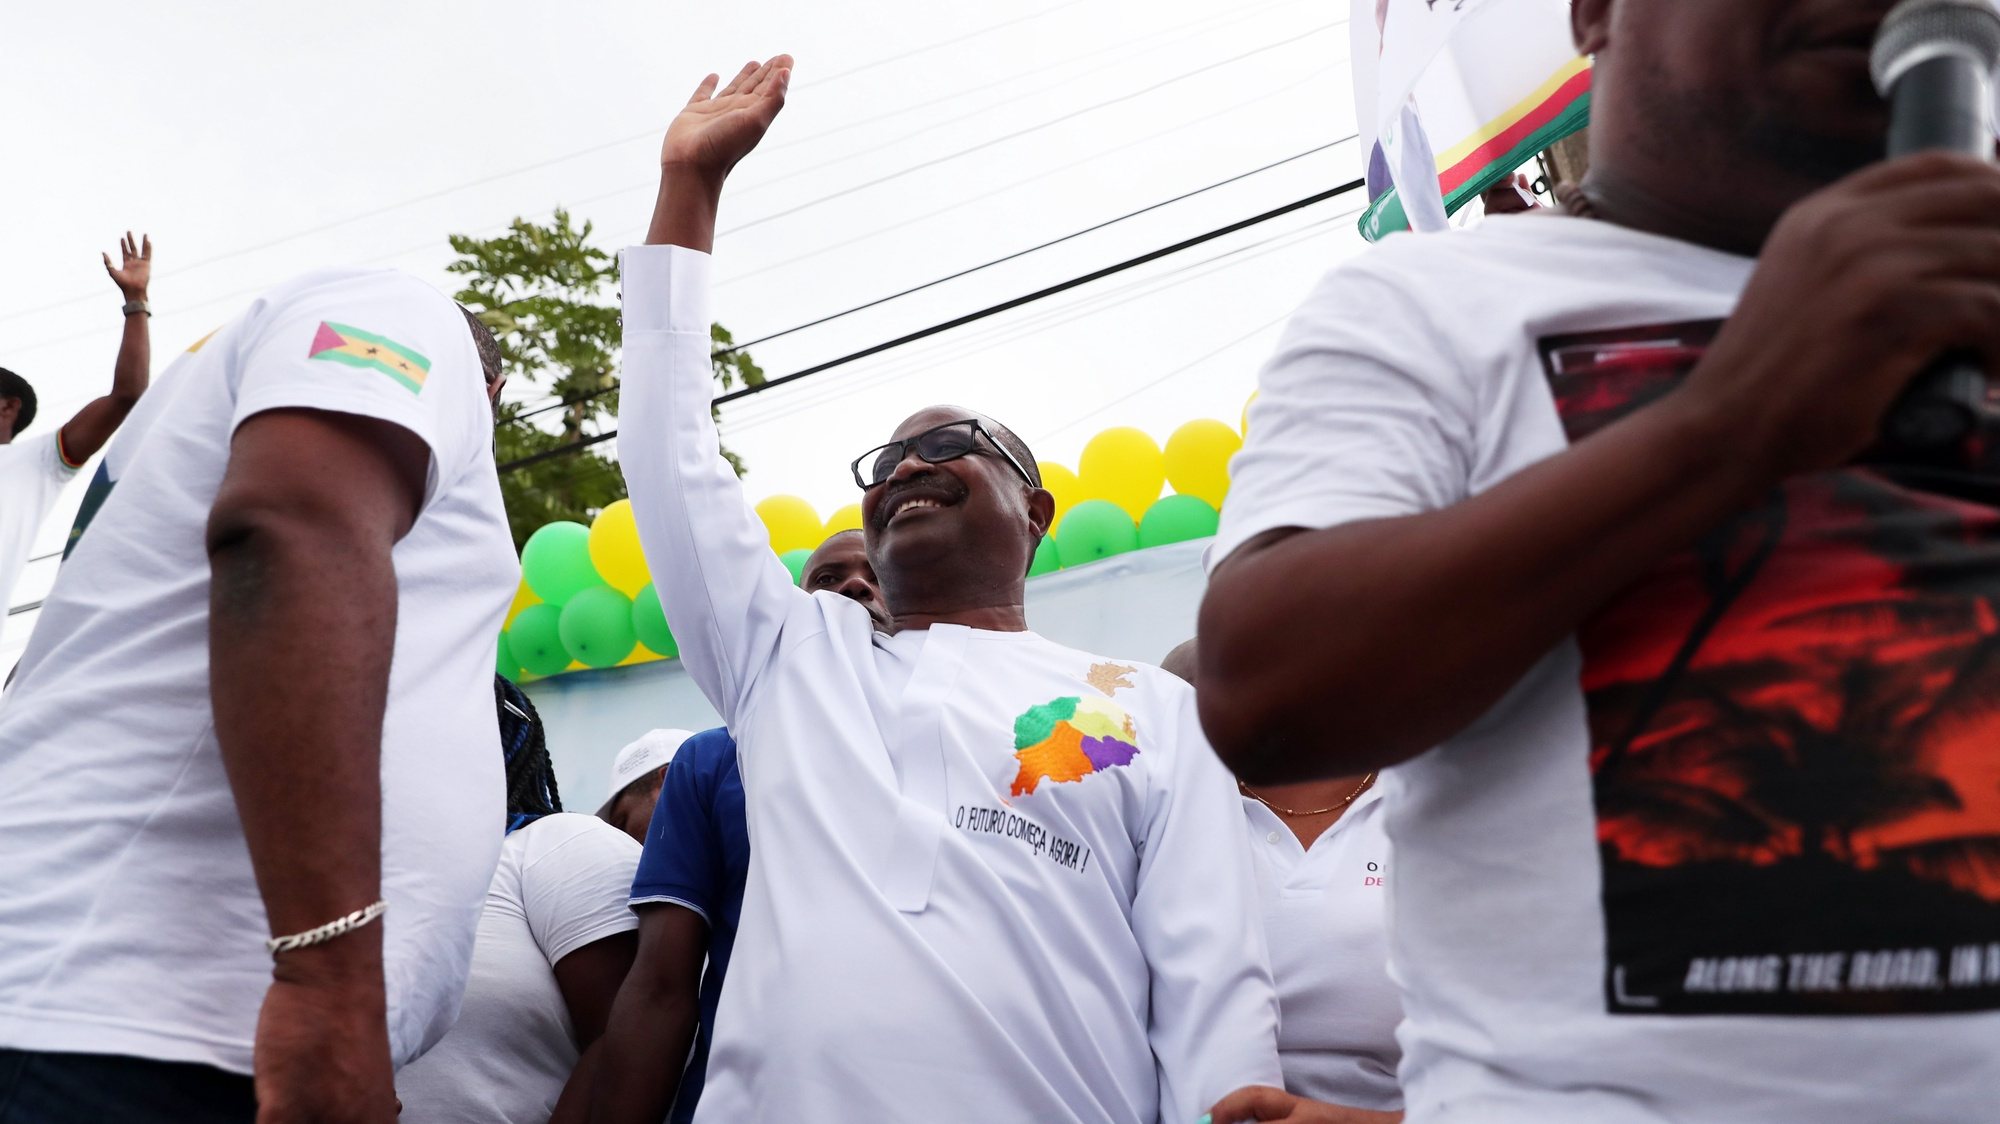 O candidato presidencial Delfim Neves, acena à população durante um comício no âmbito da campanha eleitoral, em Trindade, São Tomé Príncipe, 16 de julho de 2021. NUNO VEIGA/LUSA